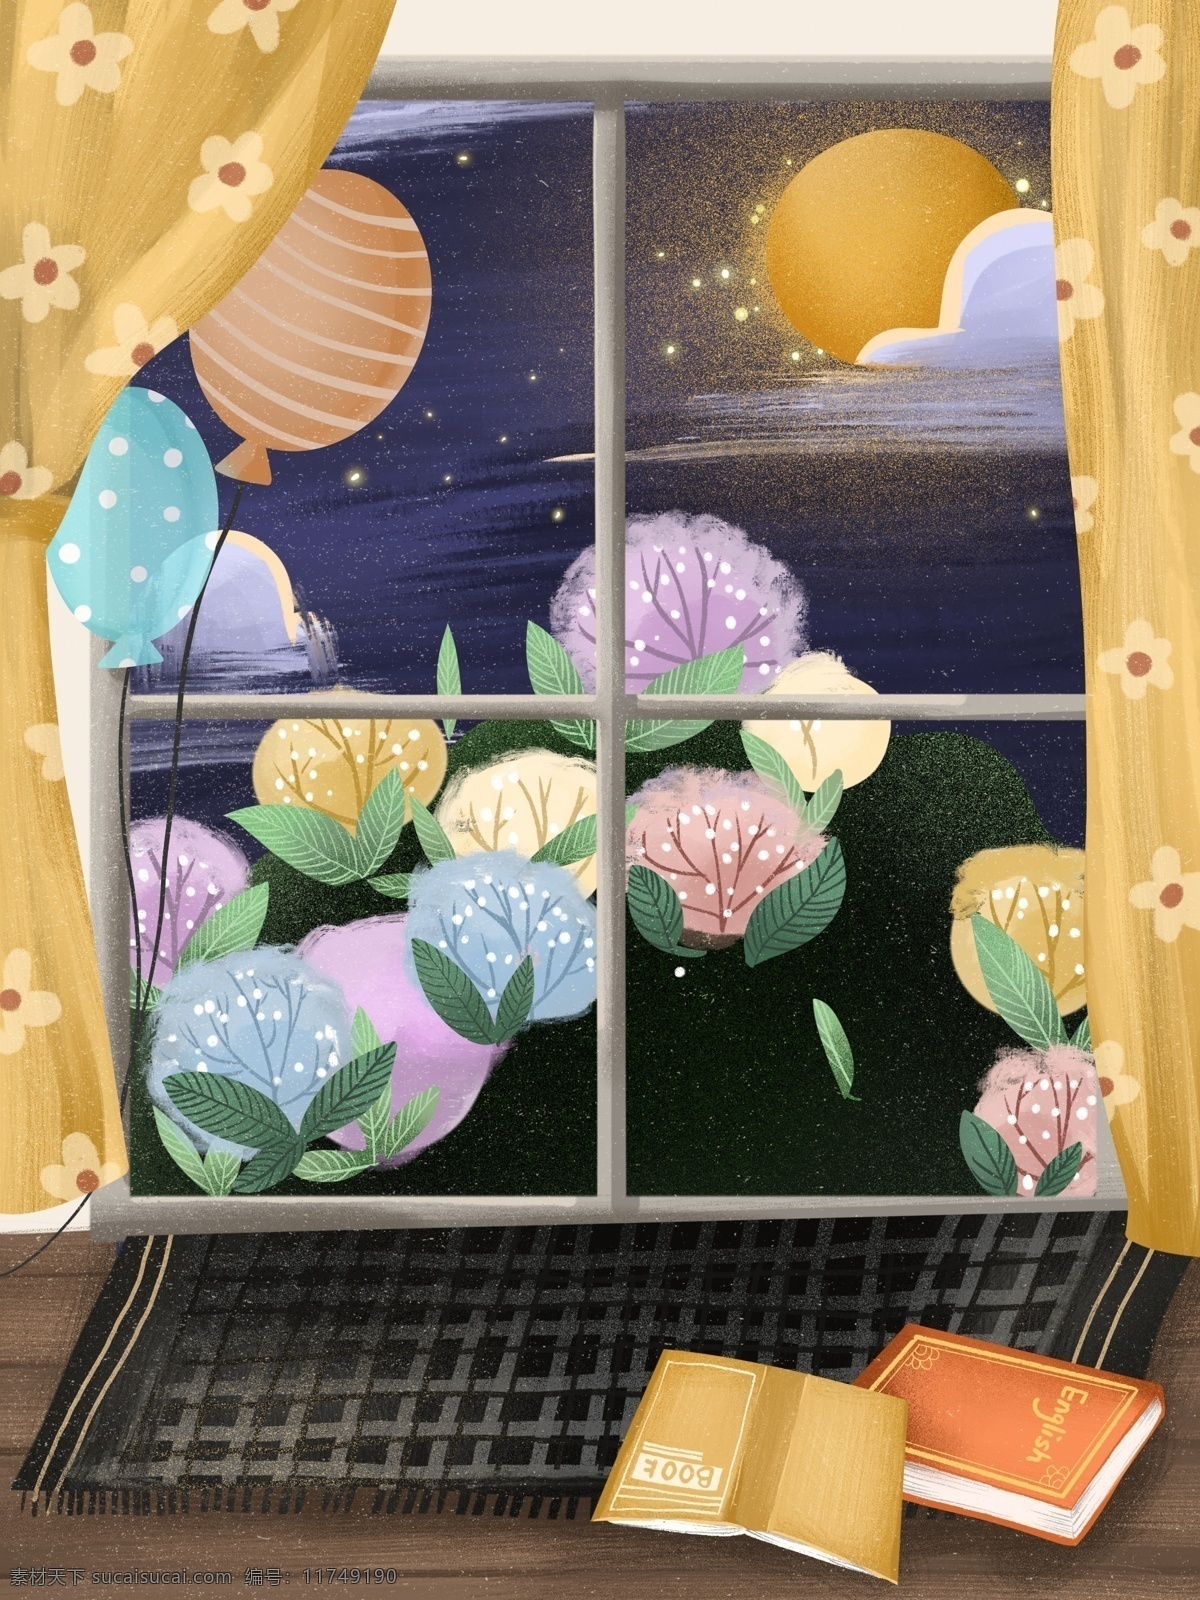 夏季 窗外 美景 背景 大海 气球 晚安背景 书本 花园 窗外夜景 广告背景 手绘背景 背景展板 特邀背景 促销背景